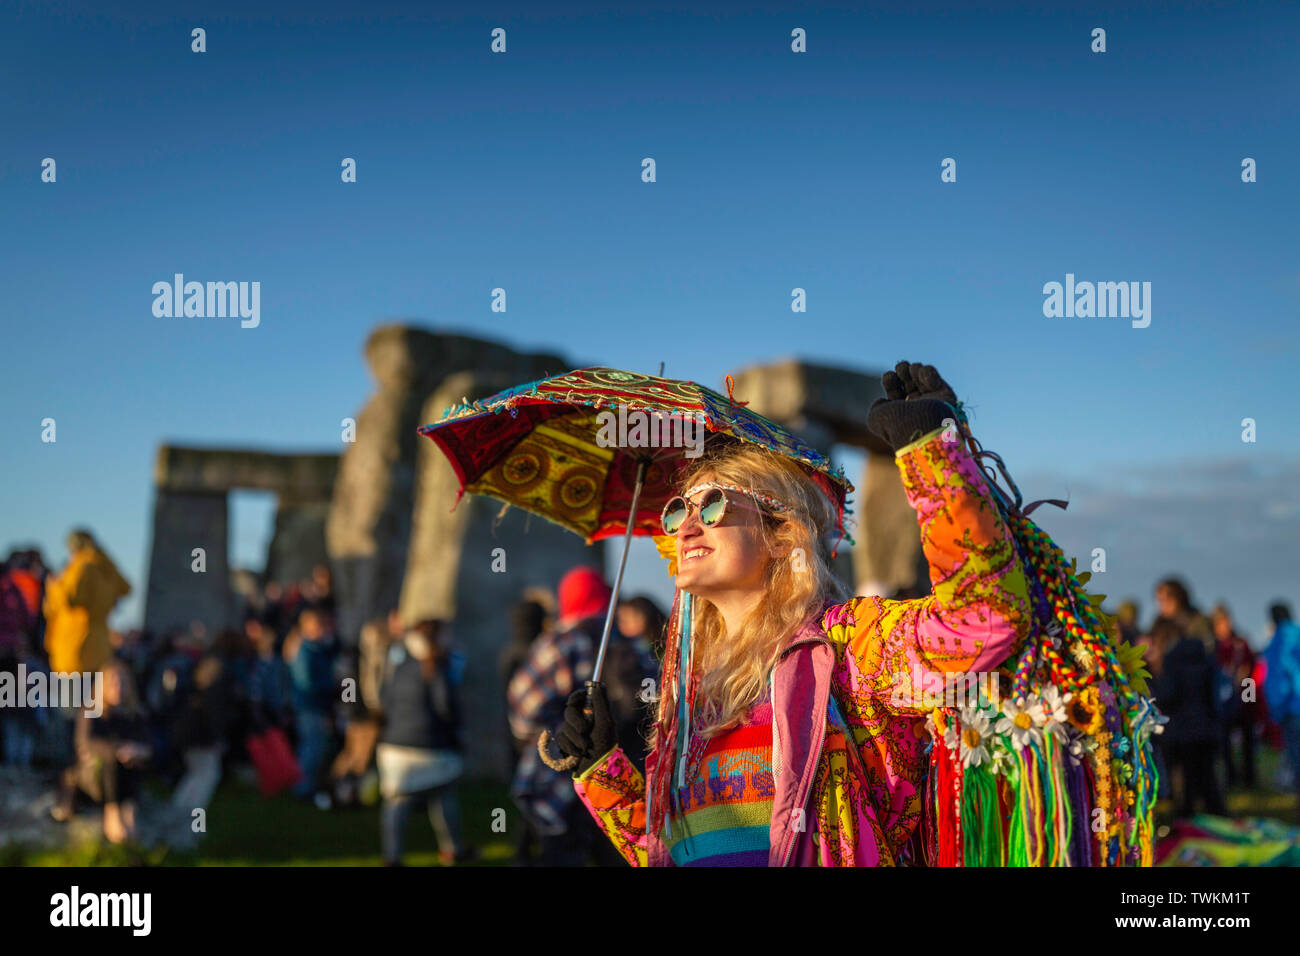 Penny Lane aus Atlanta, Georgia, USA genießt die Atmosphäre in Stonehenge  in Wiltshire während der Sommersonnenwende. Bild Datum Freitag, 21. Juni,  2019 Stockfotografie - Alamy